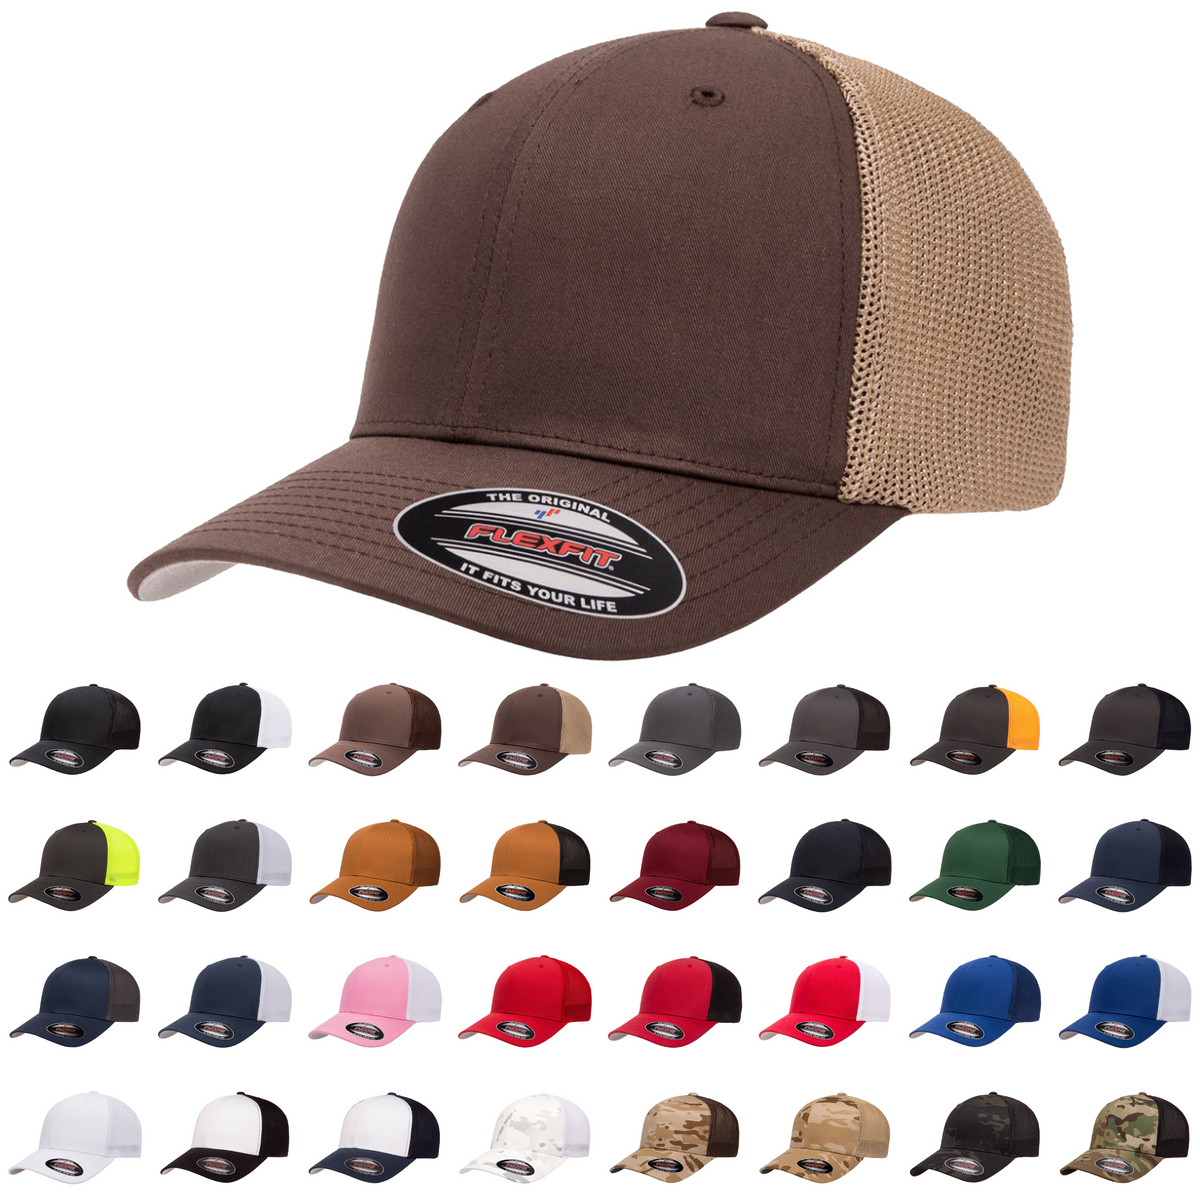 Flexfit® Trucker Hat with Mesh 6511 - Park The Back Flexfit Wholesale –